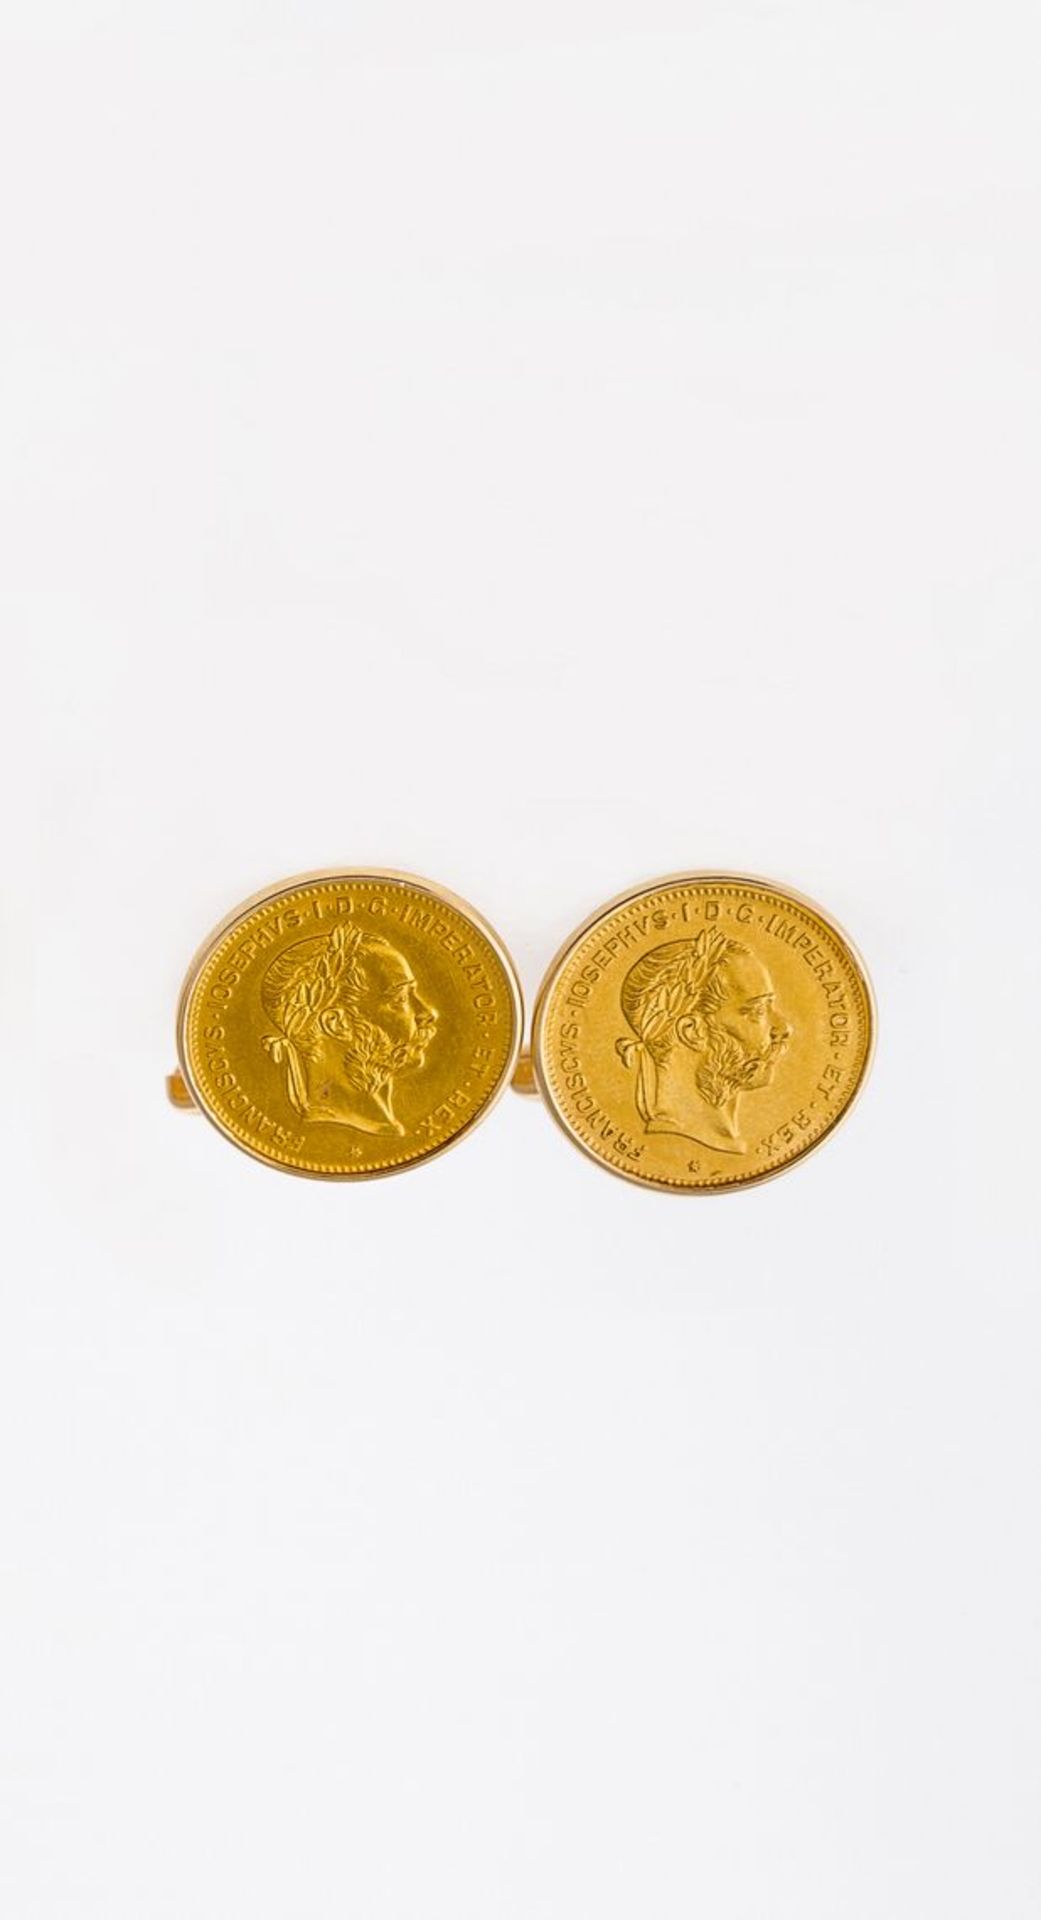 Manschettenknöpfe mit GoldmünzenGG, 585. Ein Paar. In glatter Rahmenfassung jeweils eine 1-Dukaten-